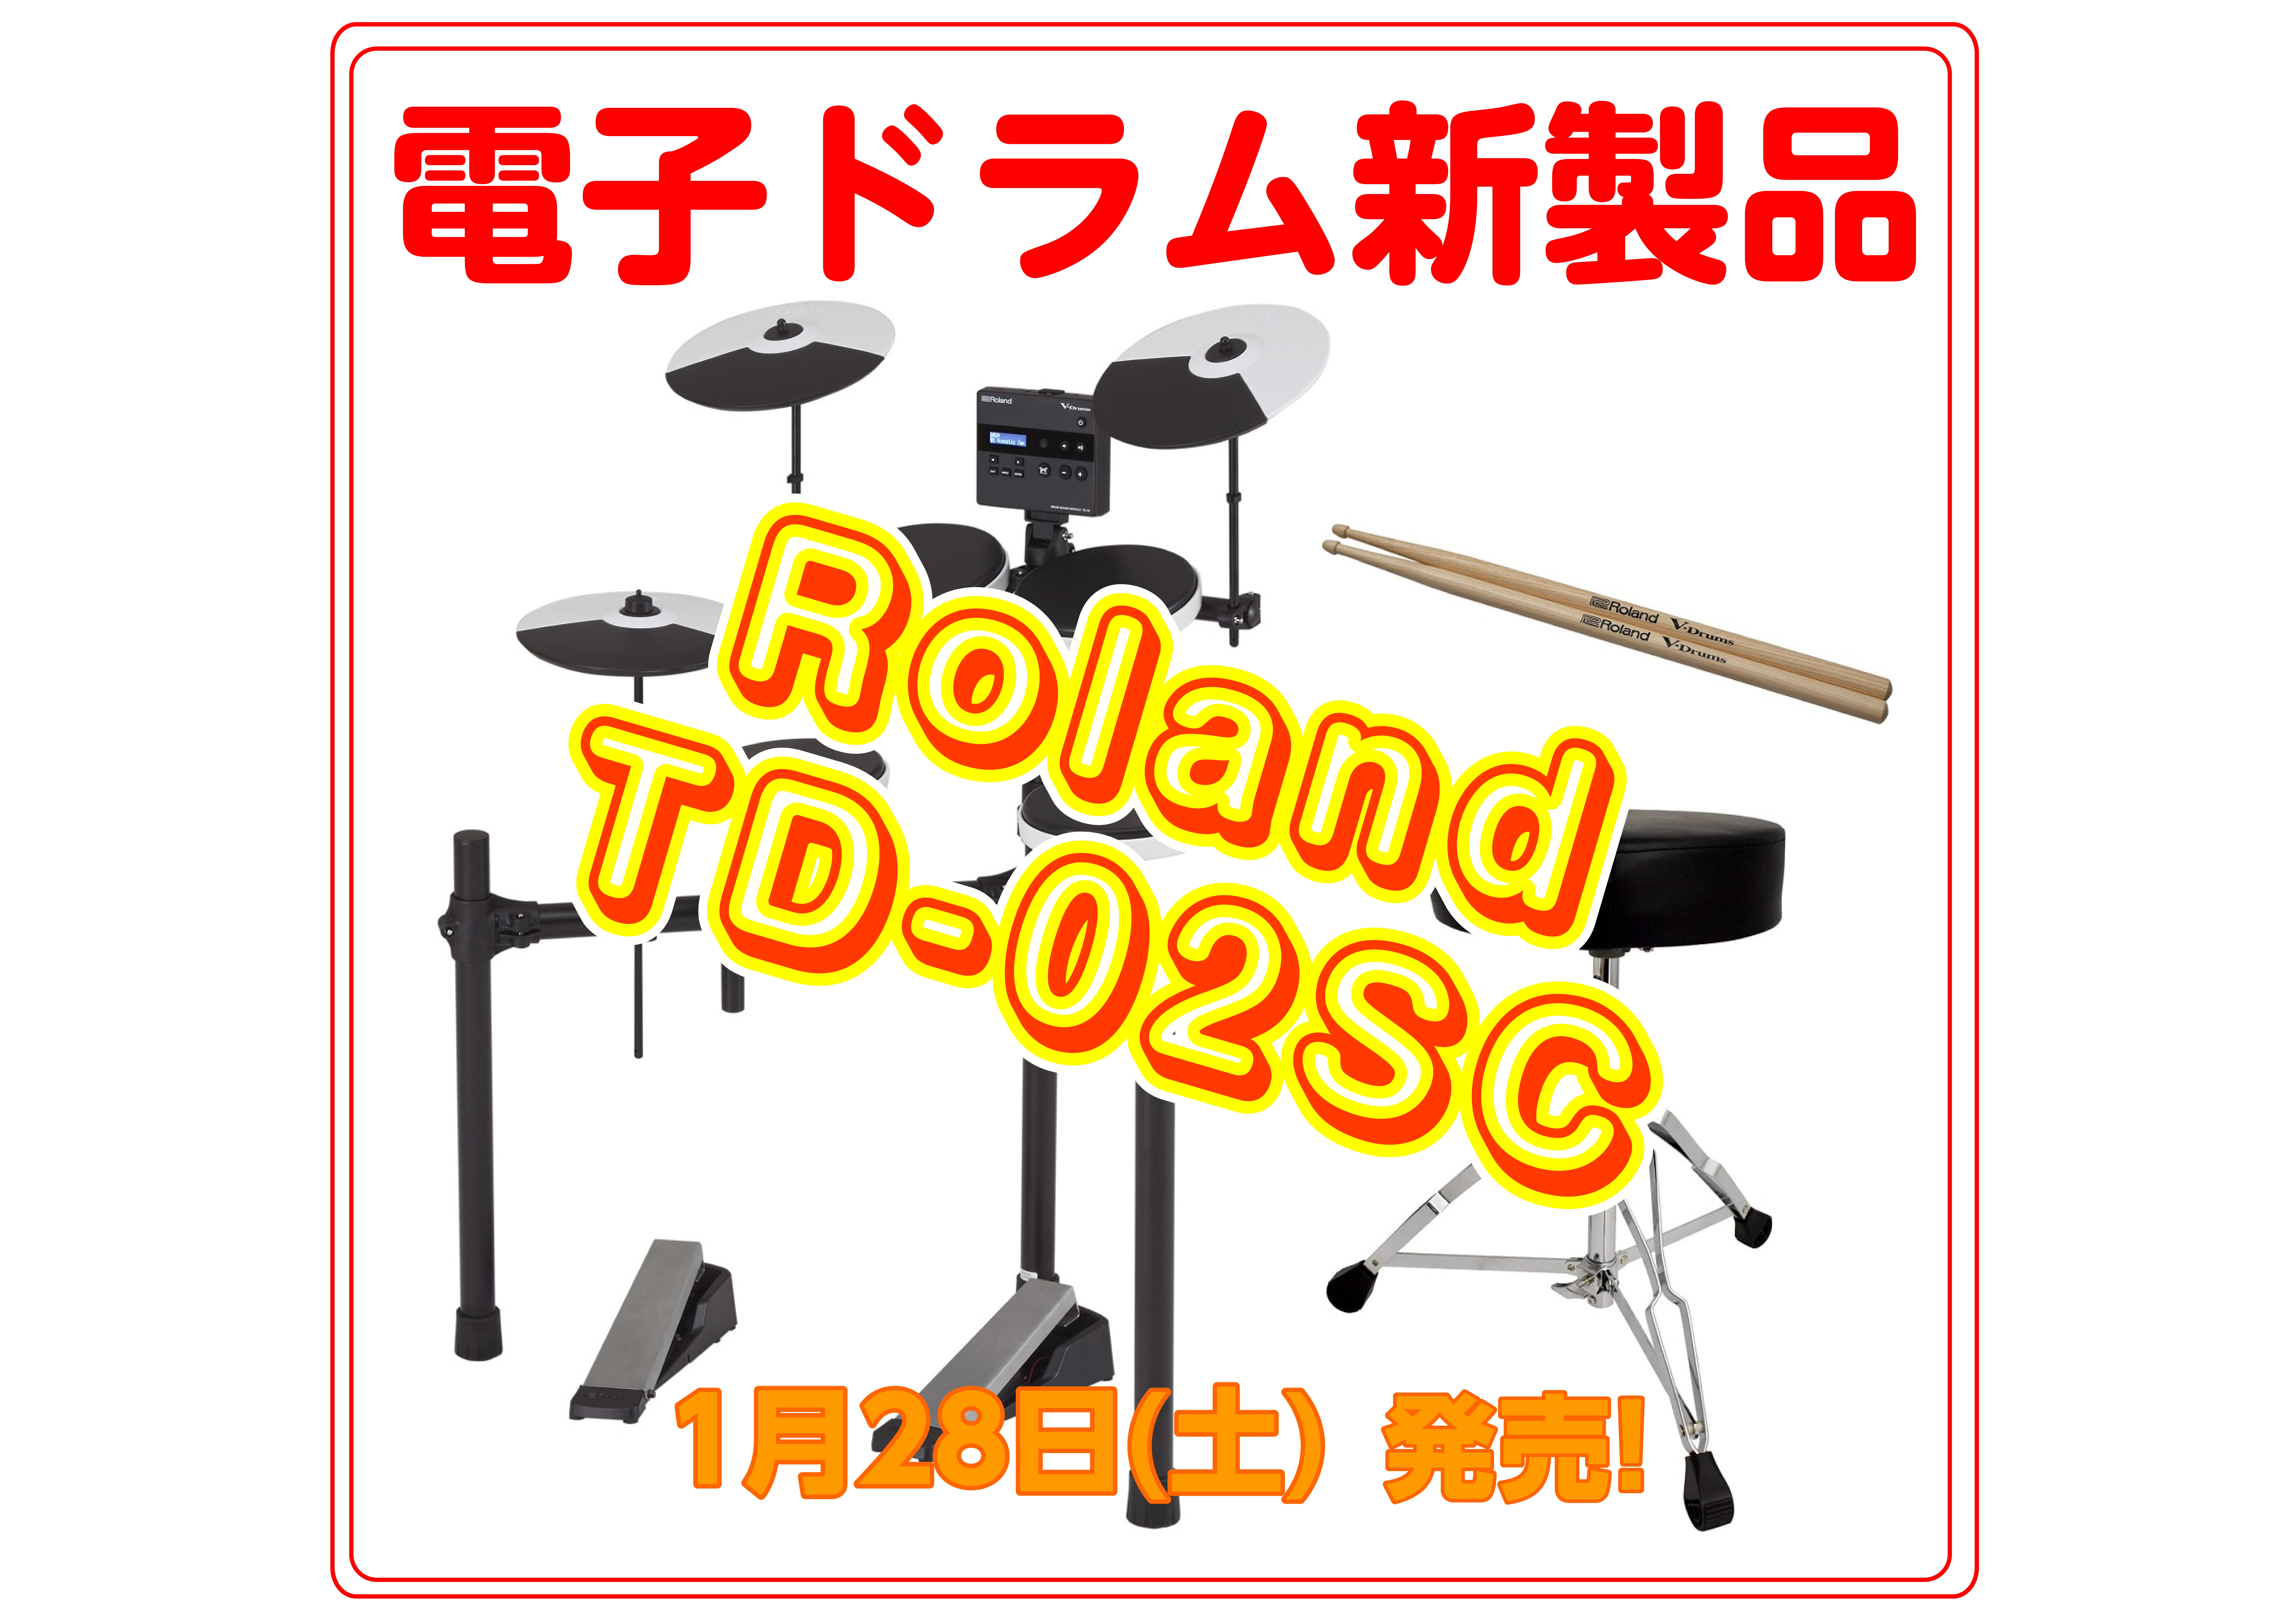 1月28日に新発売する電子ドラム「TD-02SC」のご紹介。